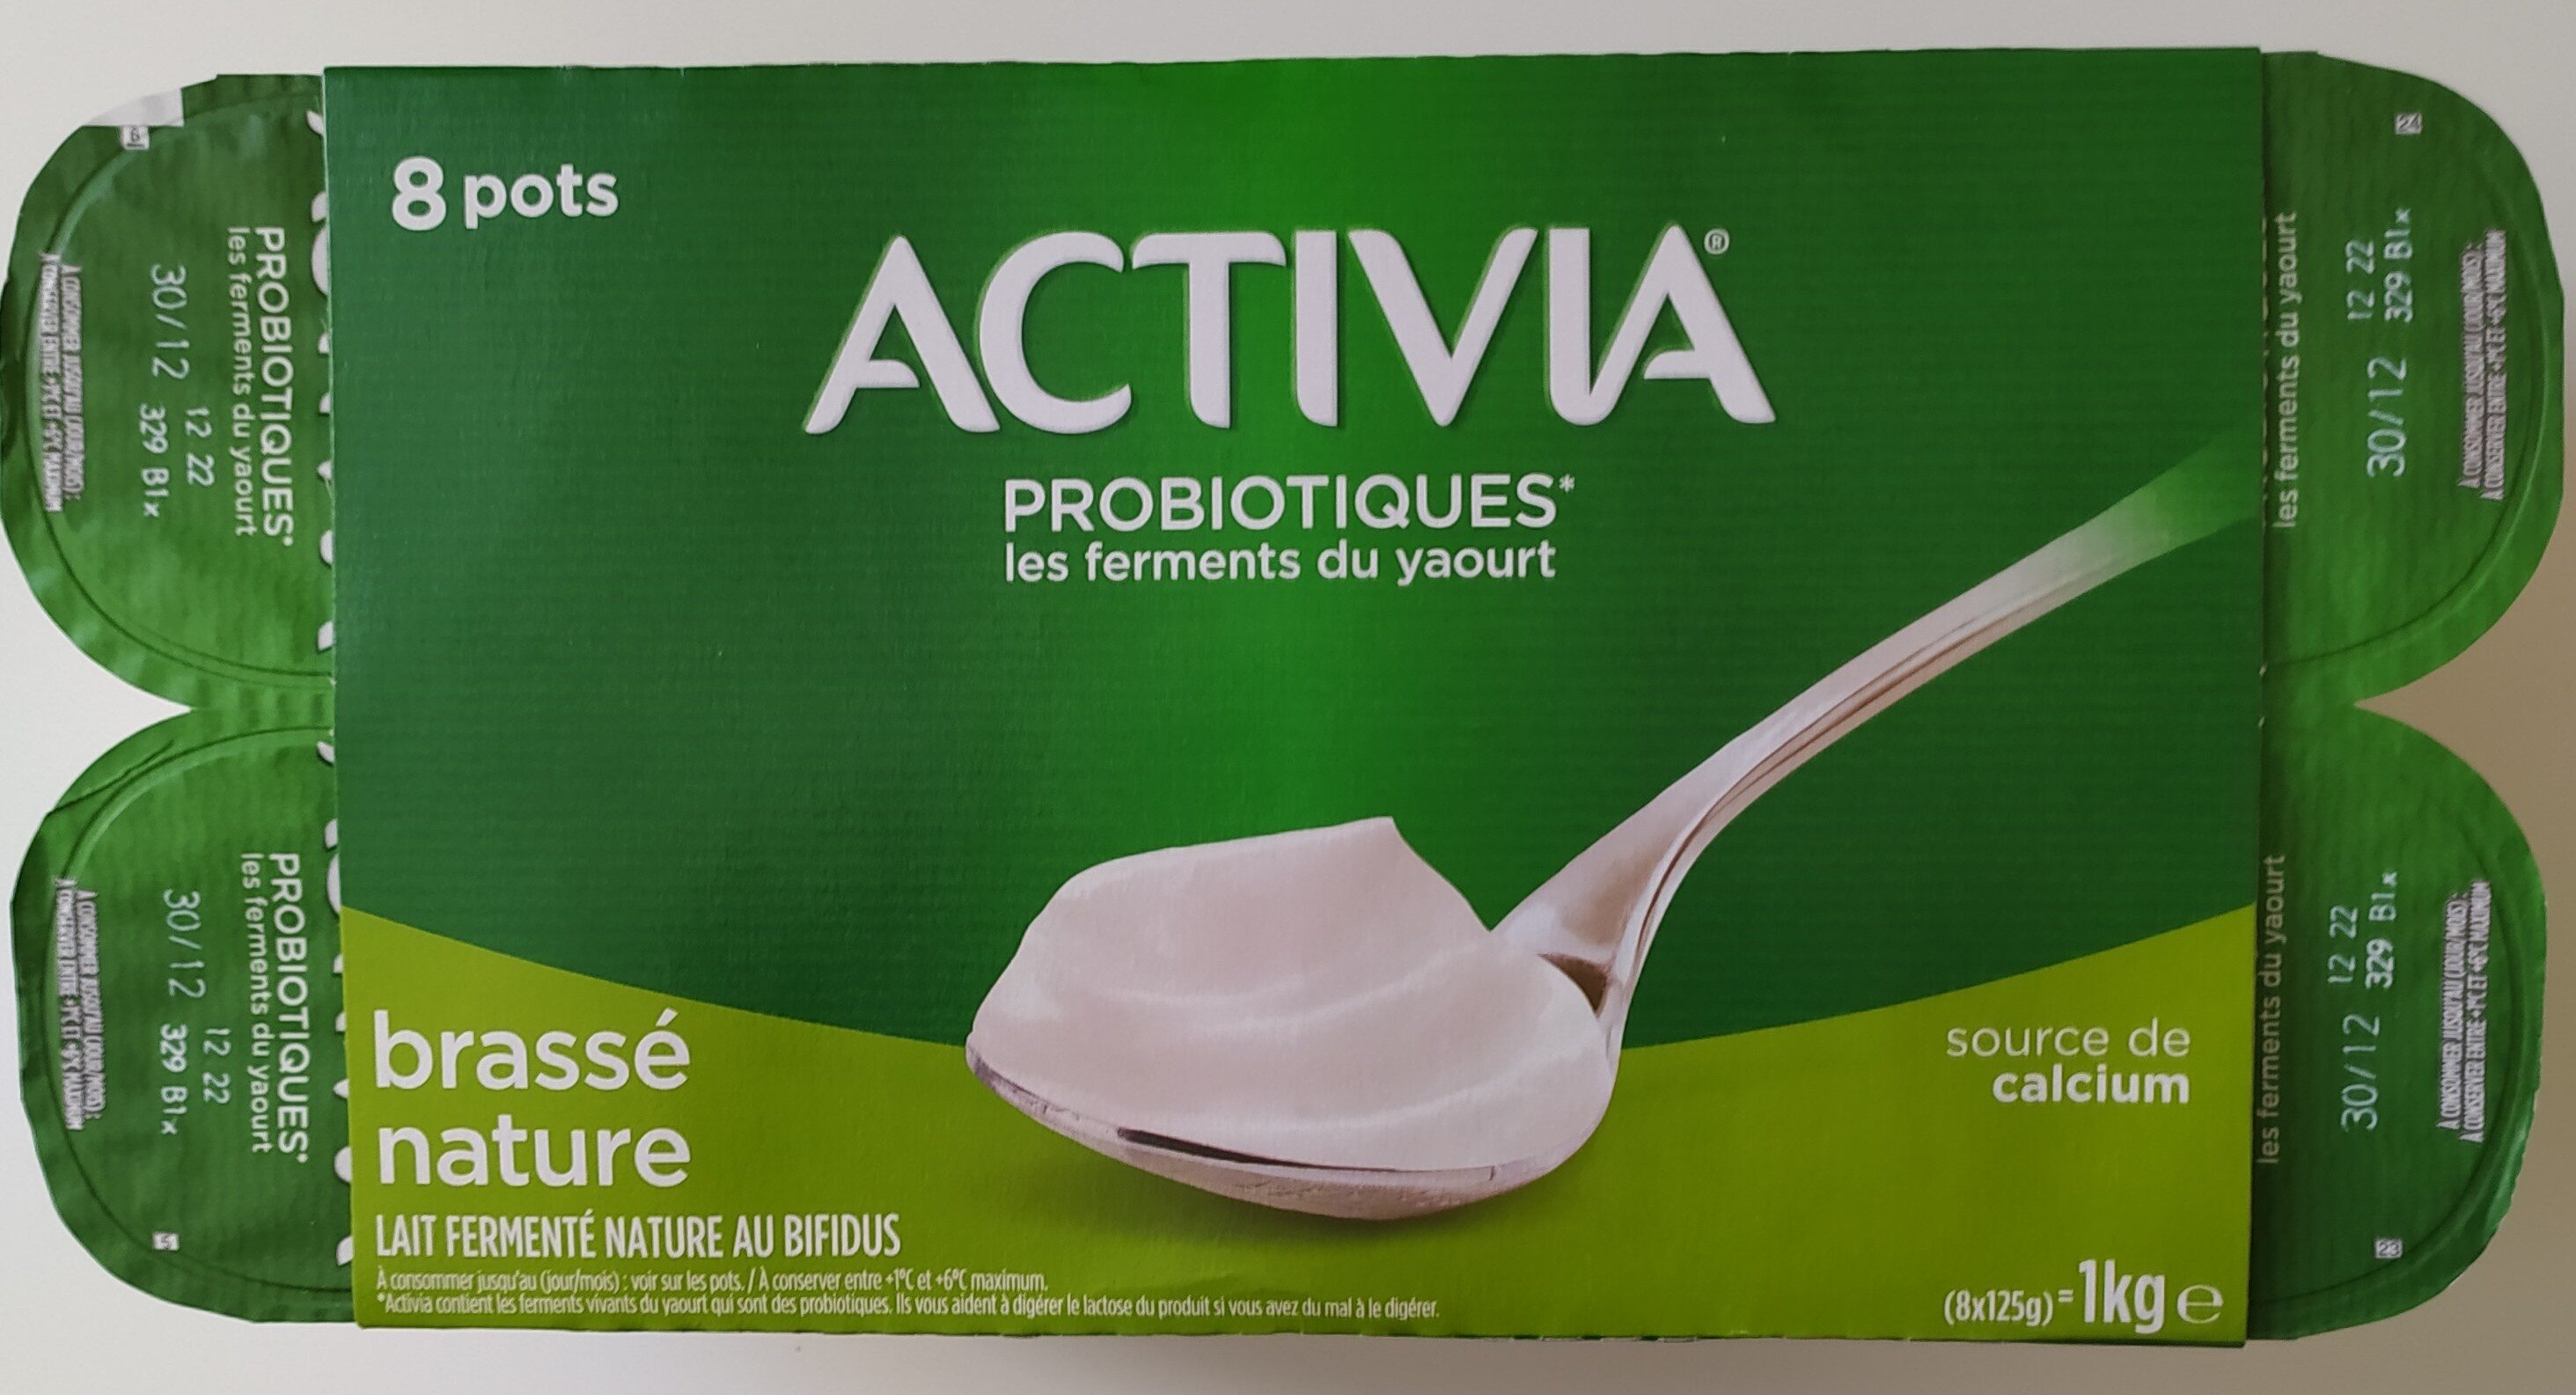 Activia - Brassé Nature - Probiotiques - Product - fr